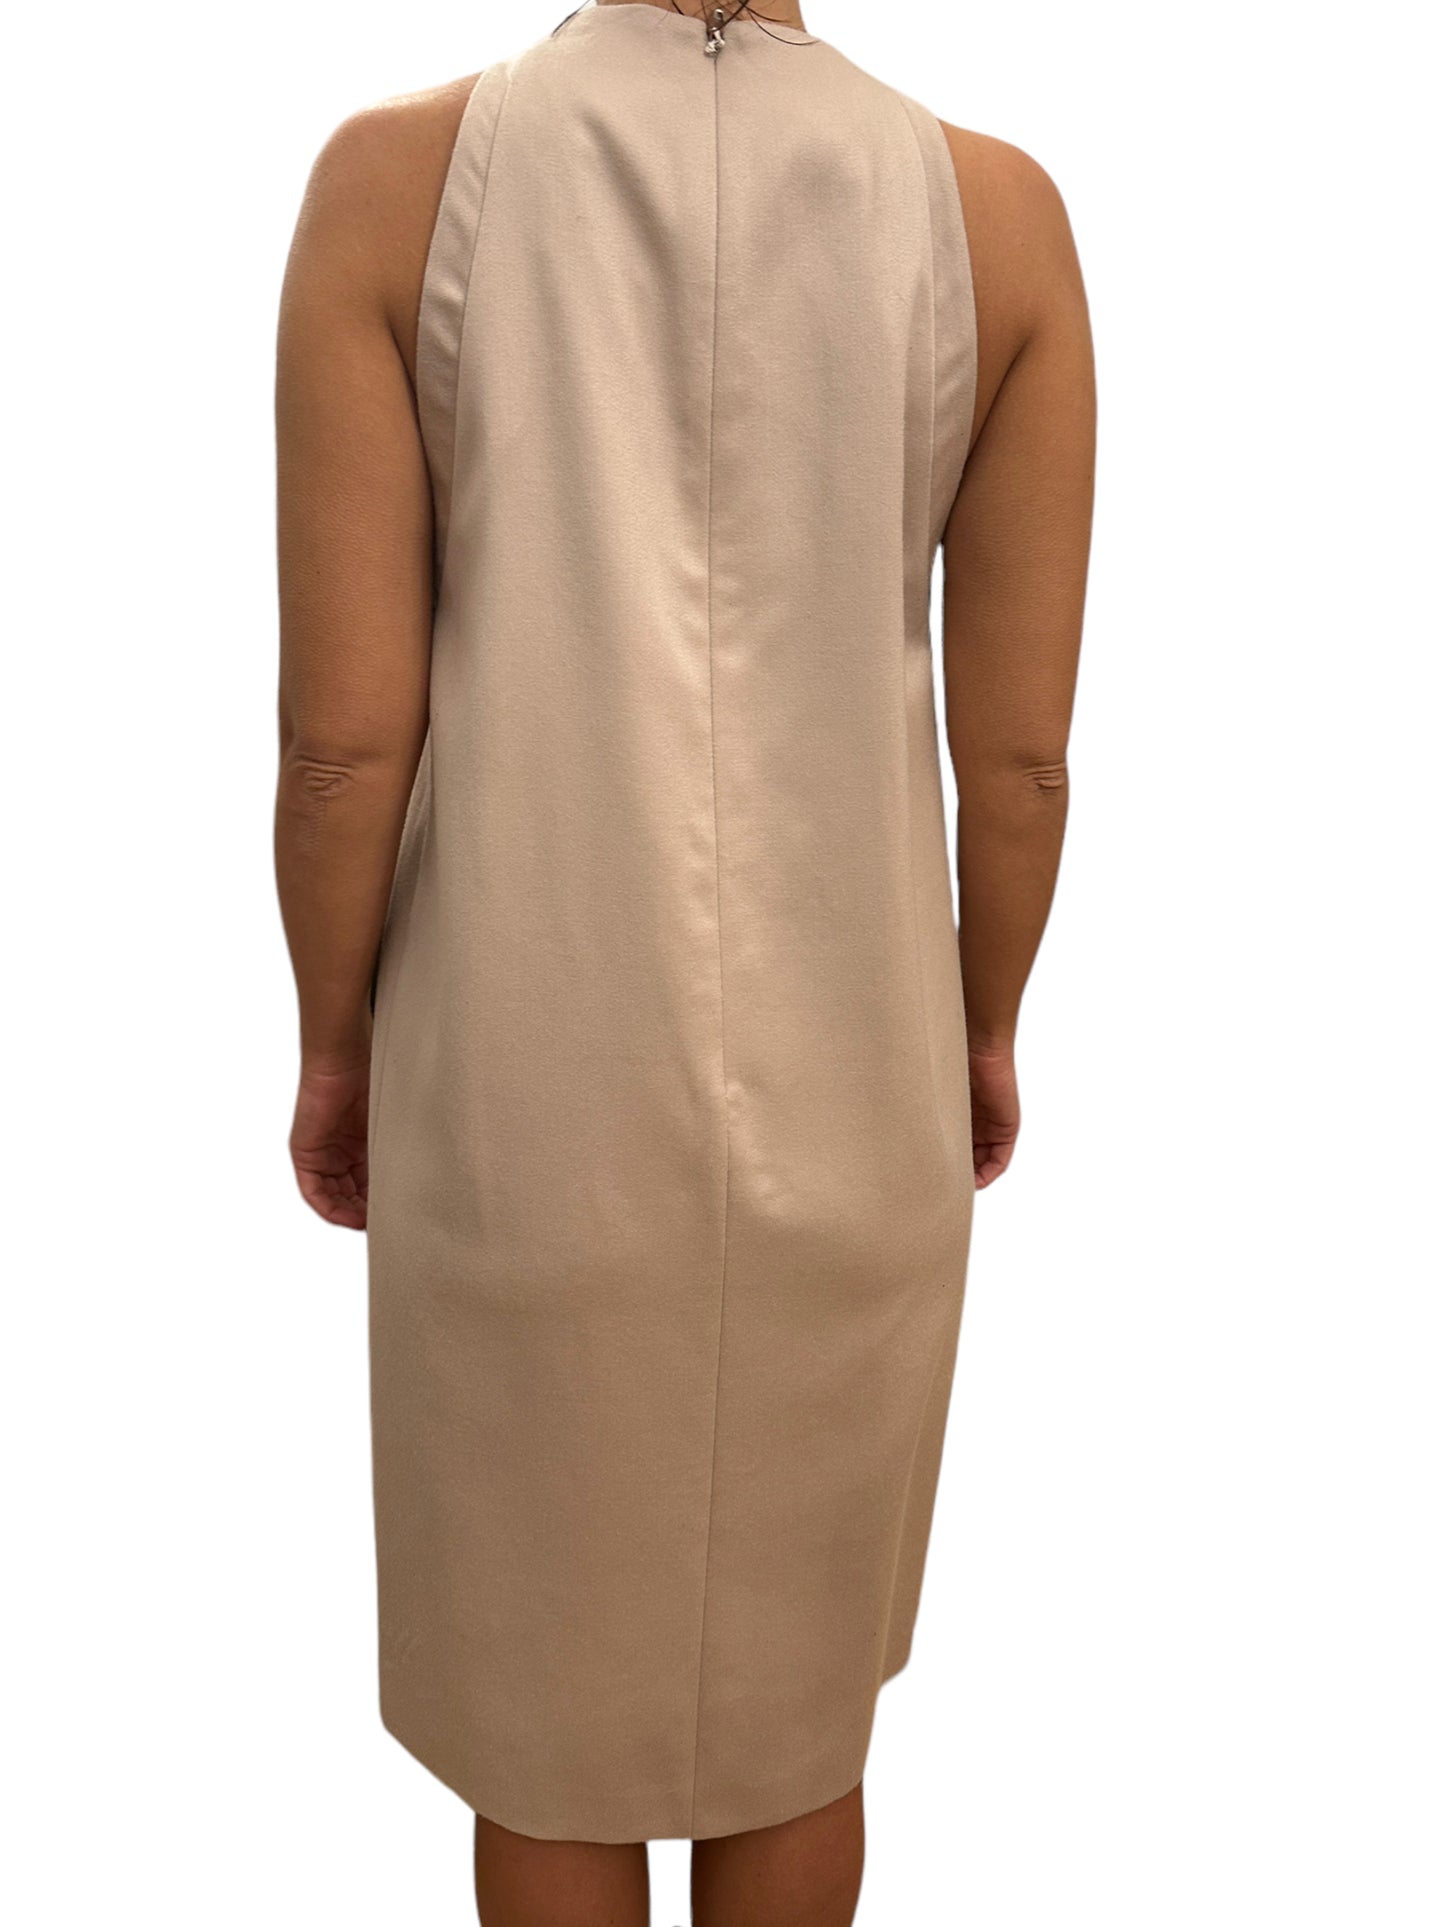 Pritch London - Wool Dress - Size UK10 (US6)